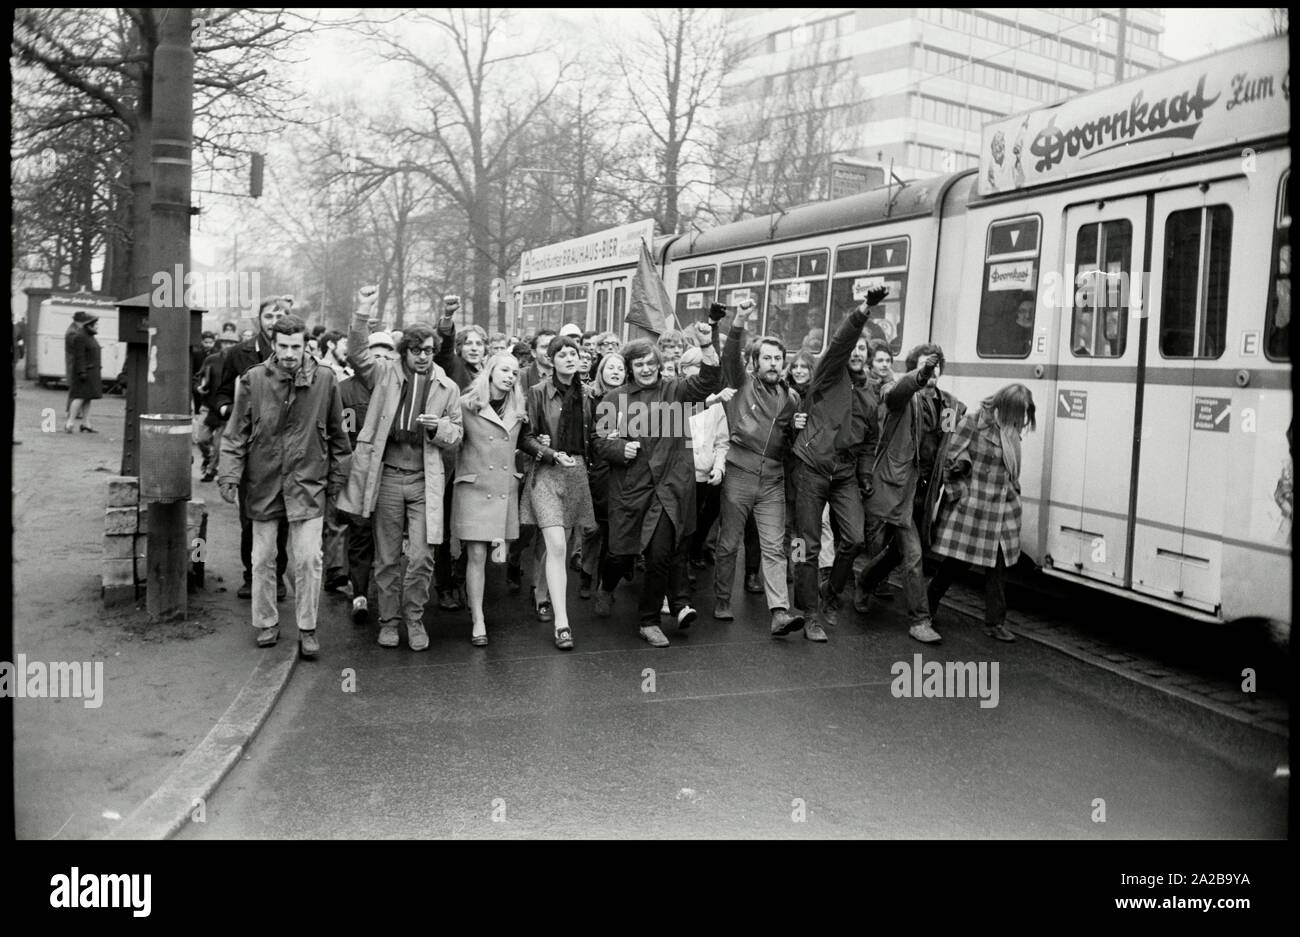 L'Allemagne. Francfort. 1.Février 1969. Environ 1000 étudiants de l'Université de Francfort rallye contre l'état d'urgence en Espagne. Auteur : Max Scheler/SZ Photo. Banque D'Images